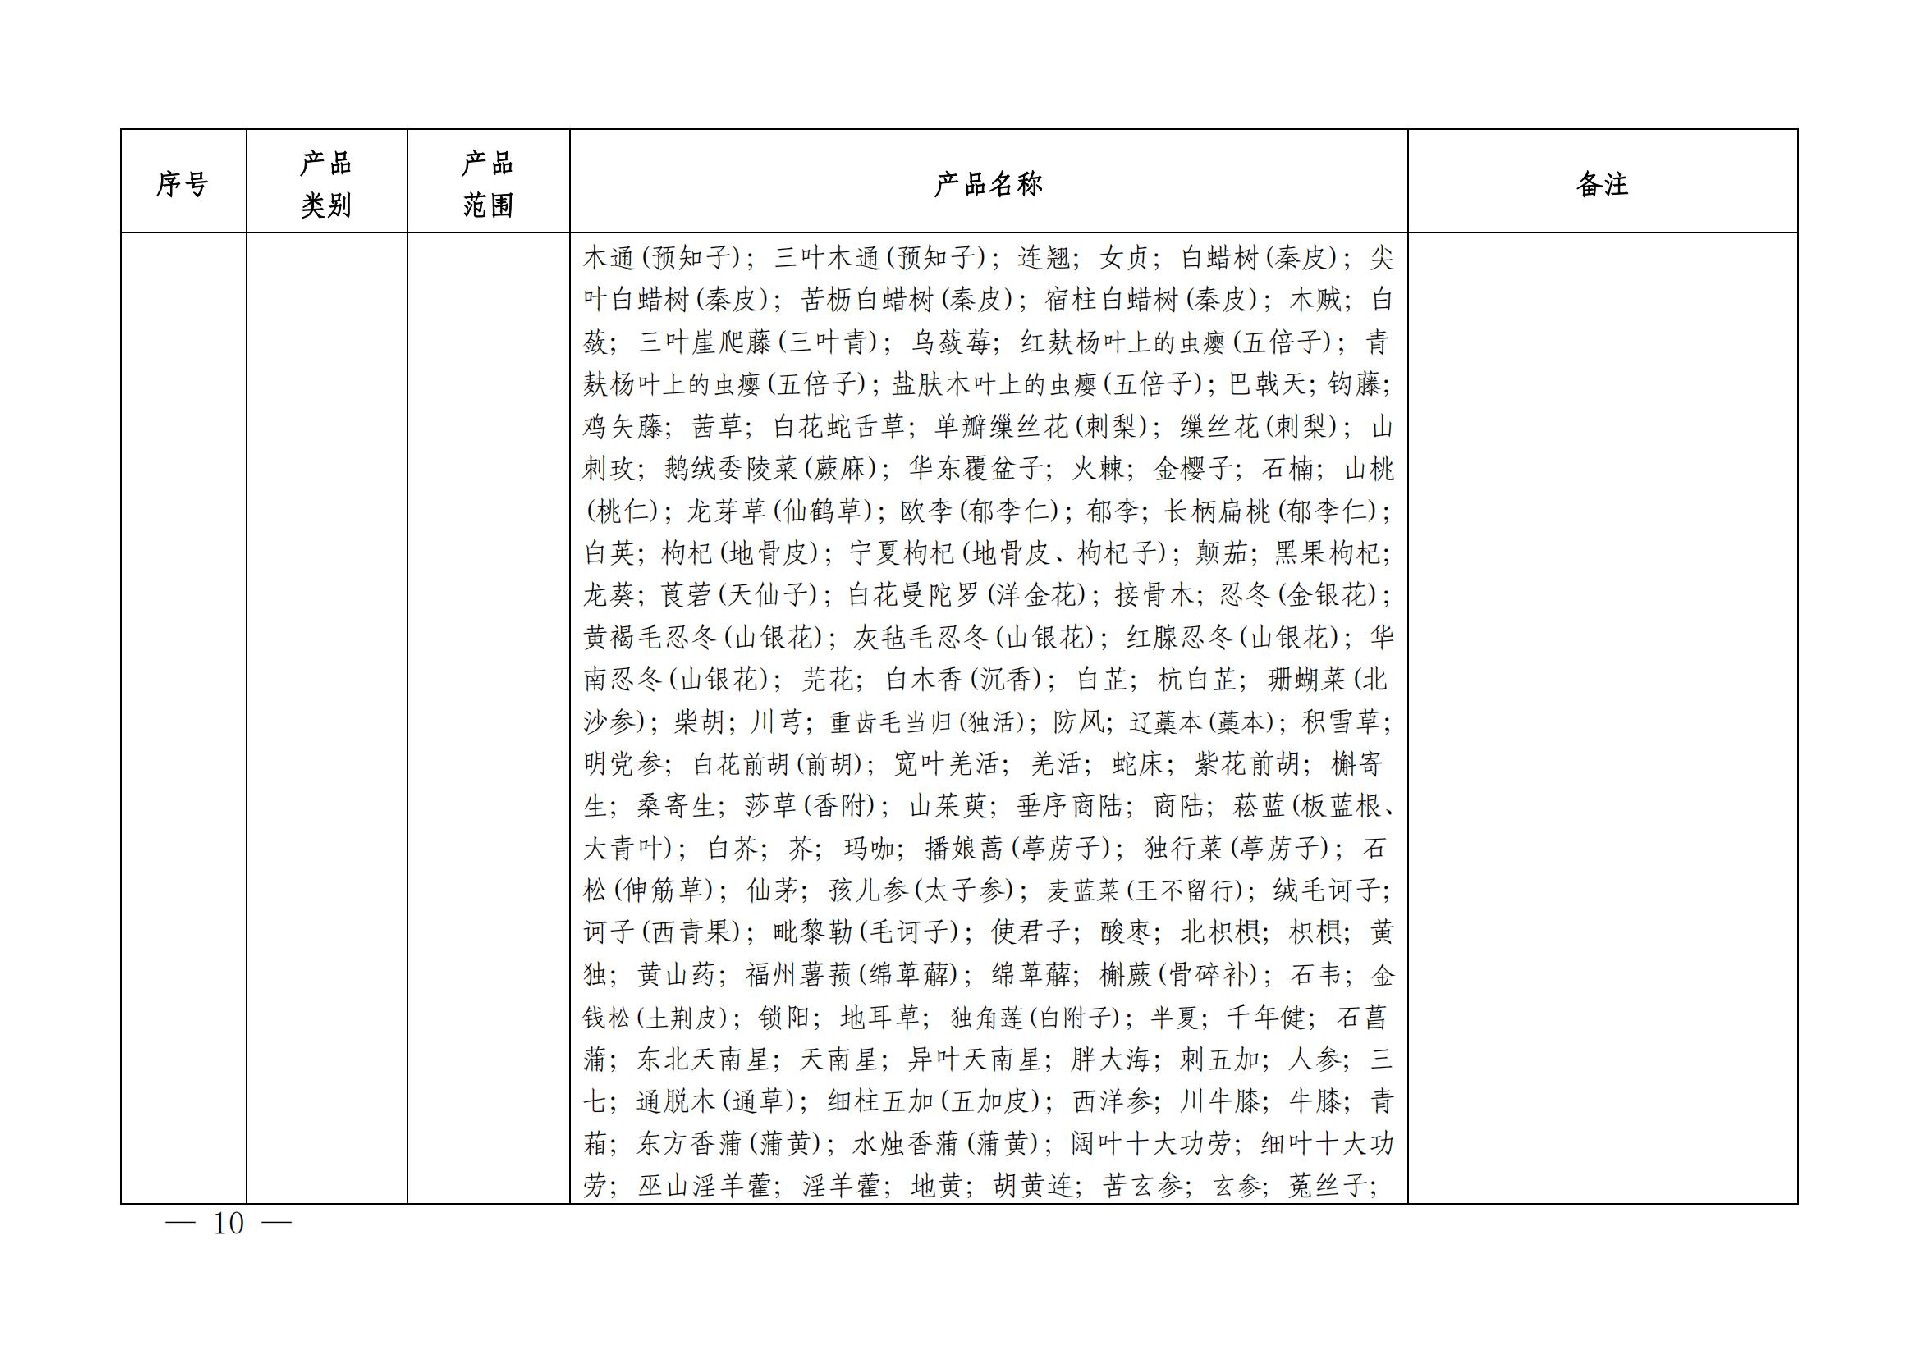 有机产品认证目录【认监委2019年第22号公告】(1)_09.jpg